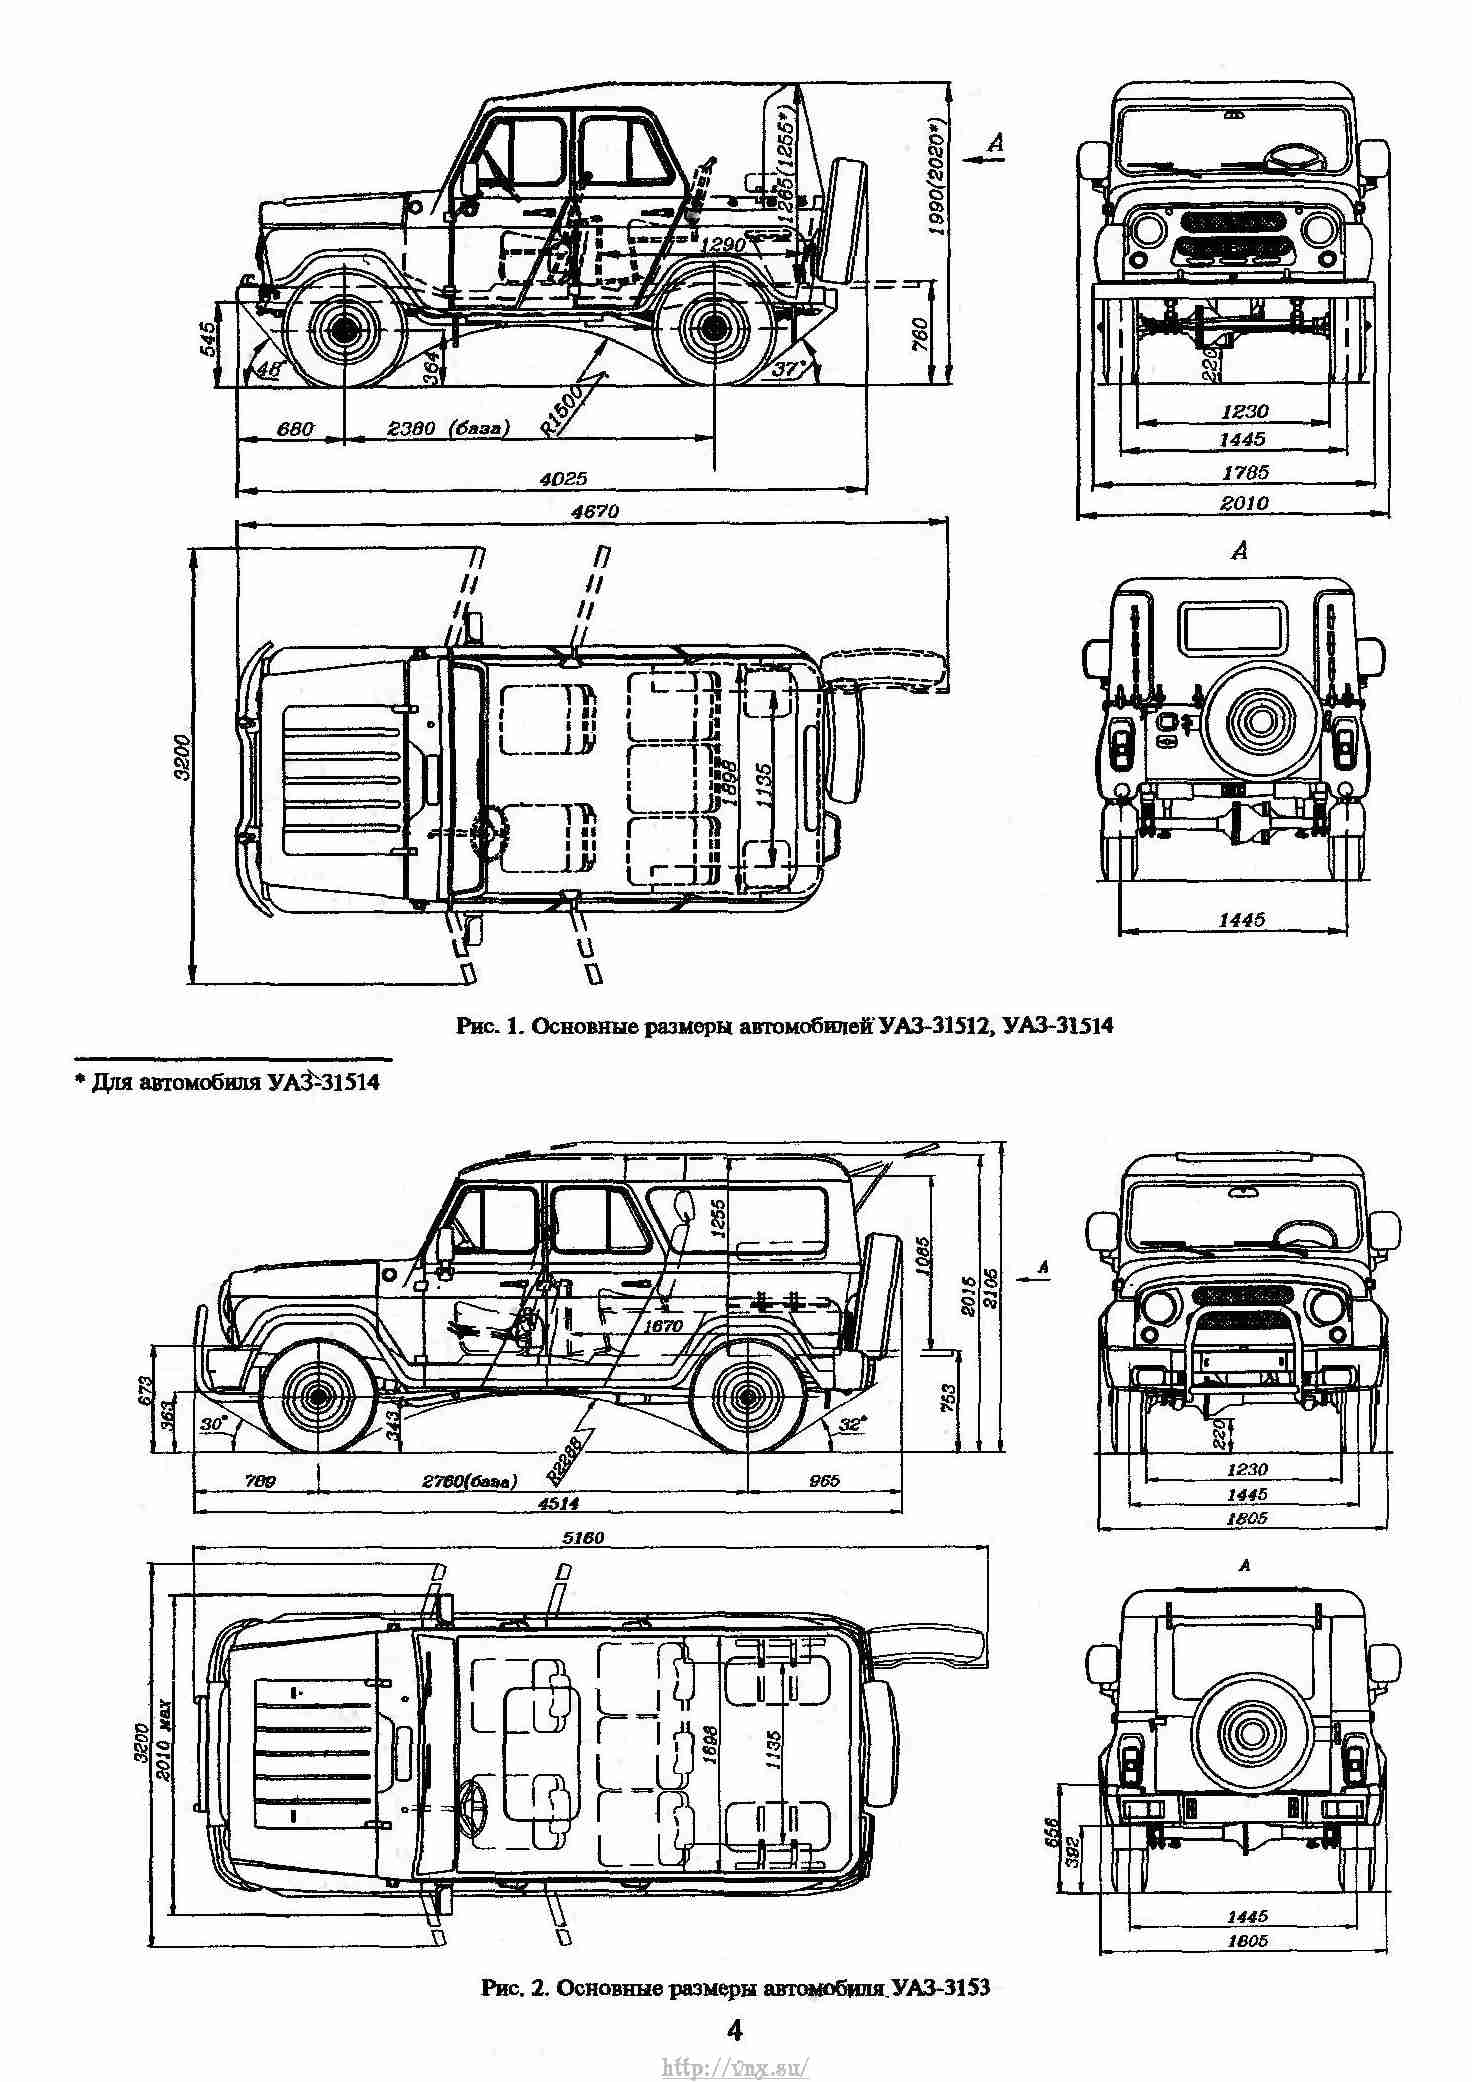 Уаз-452: технические характеристики